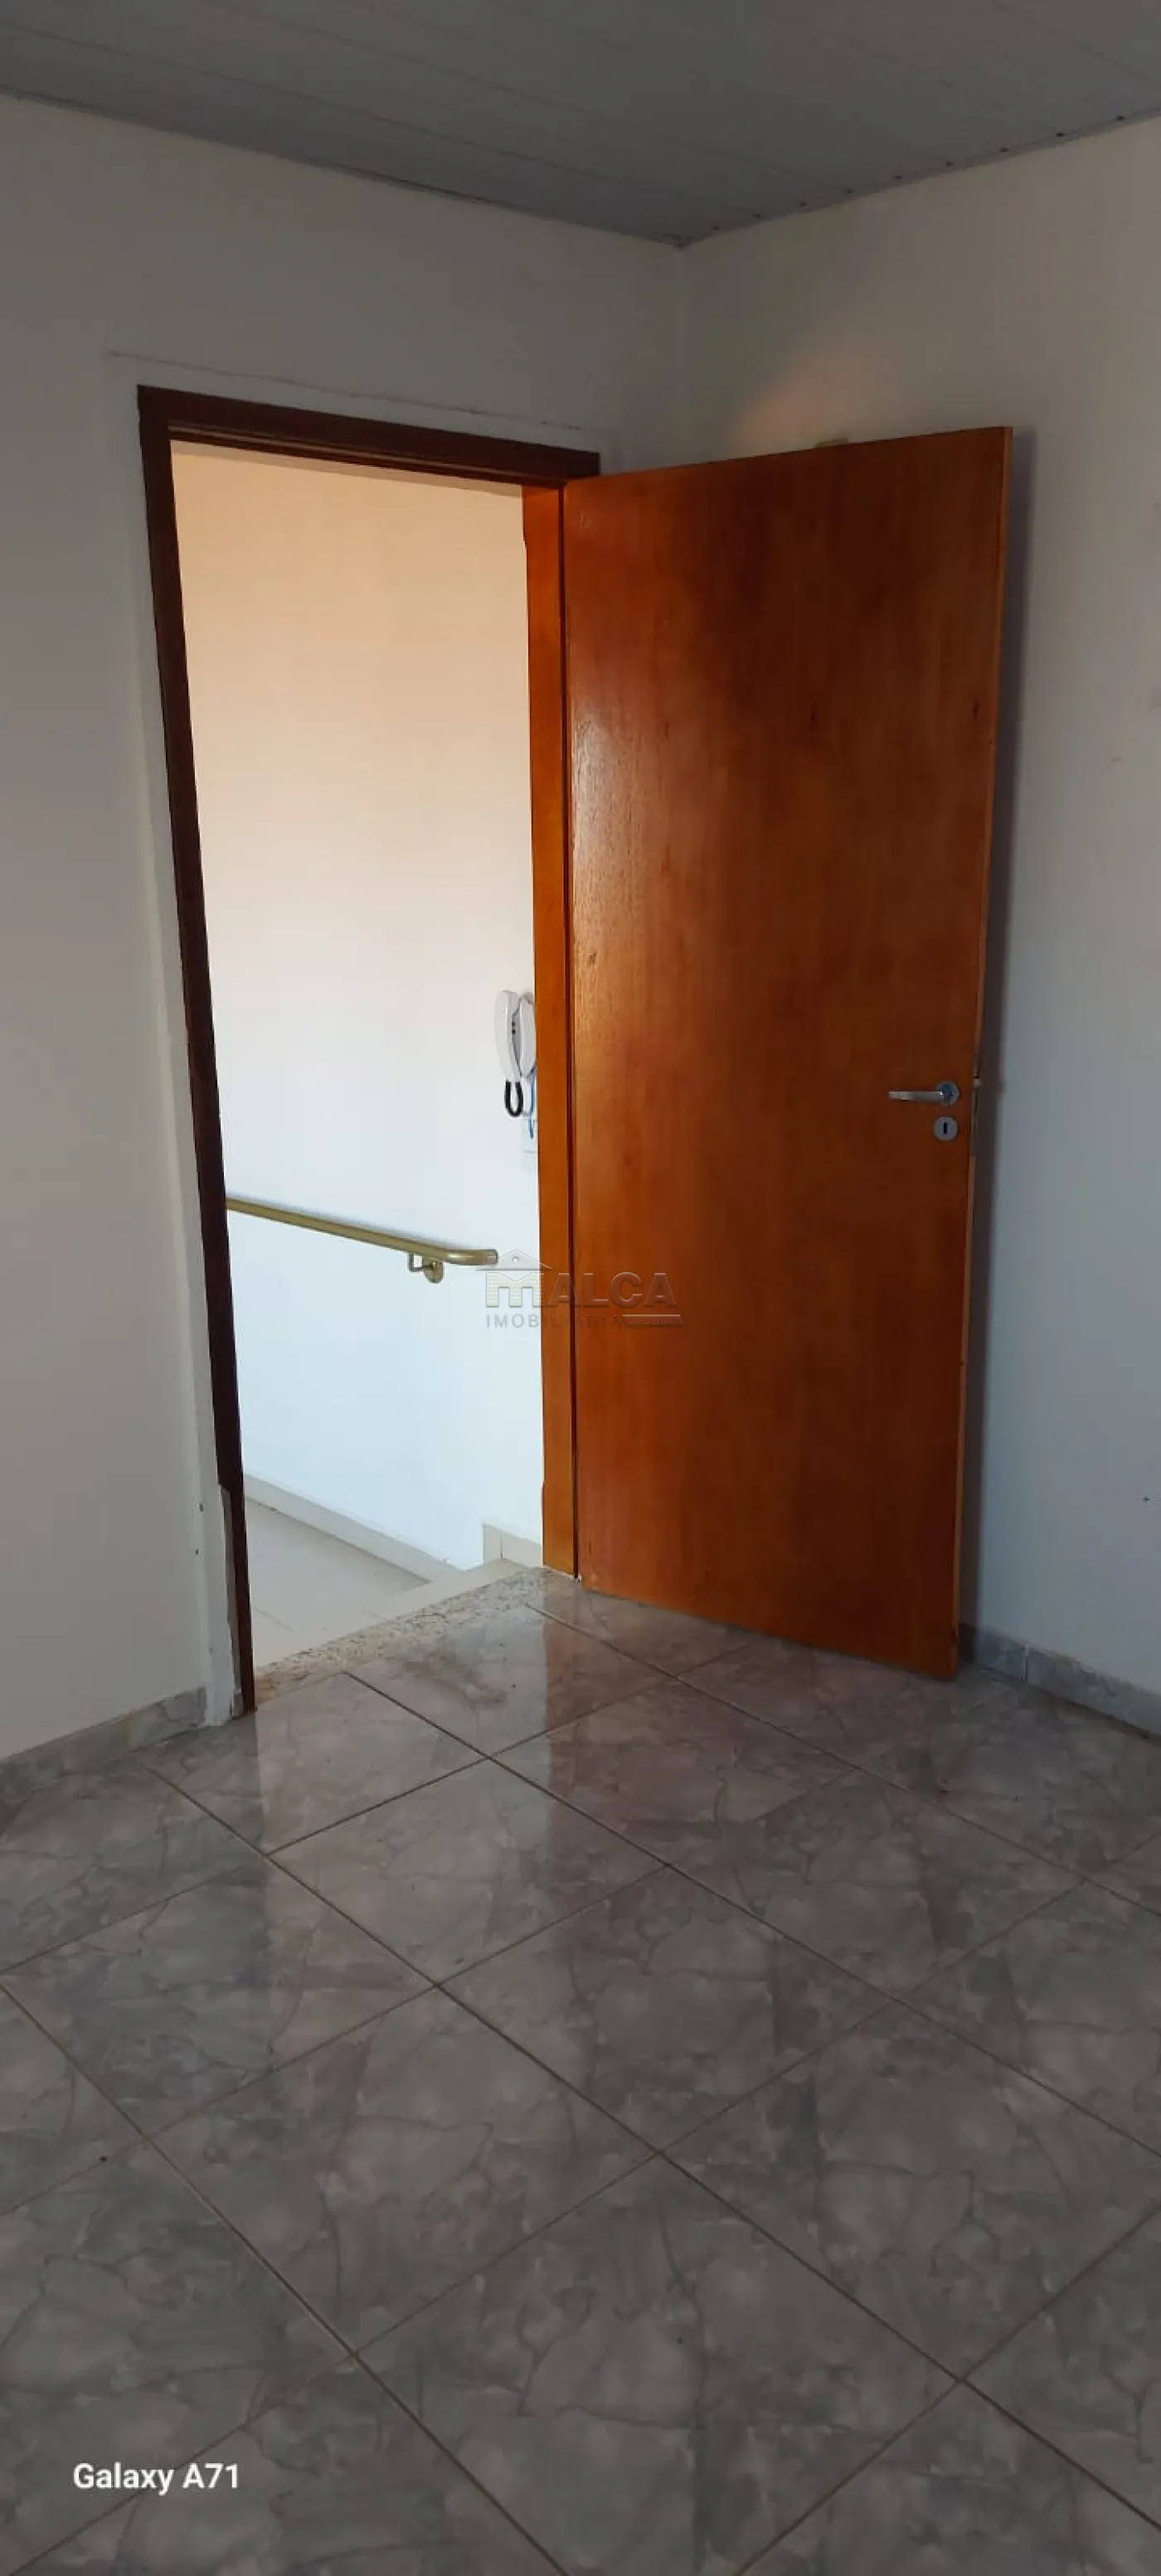 Alugar Casas / Padrão em São José do Rio Pardo R$ 950,00 - Foto 9